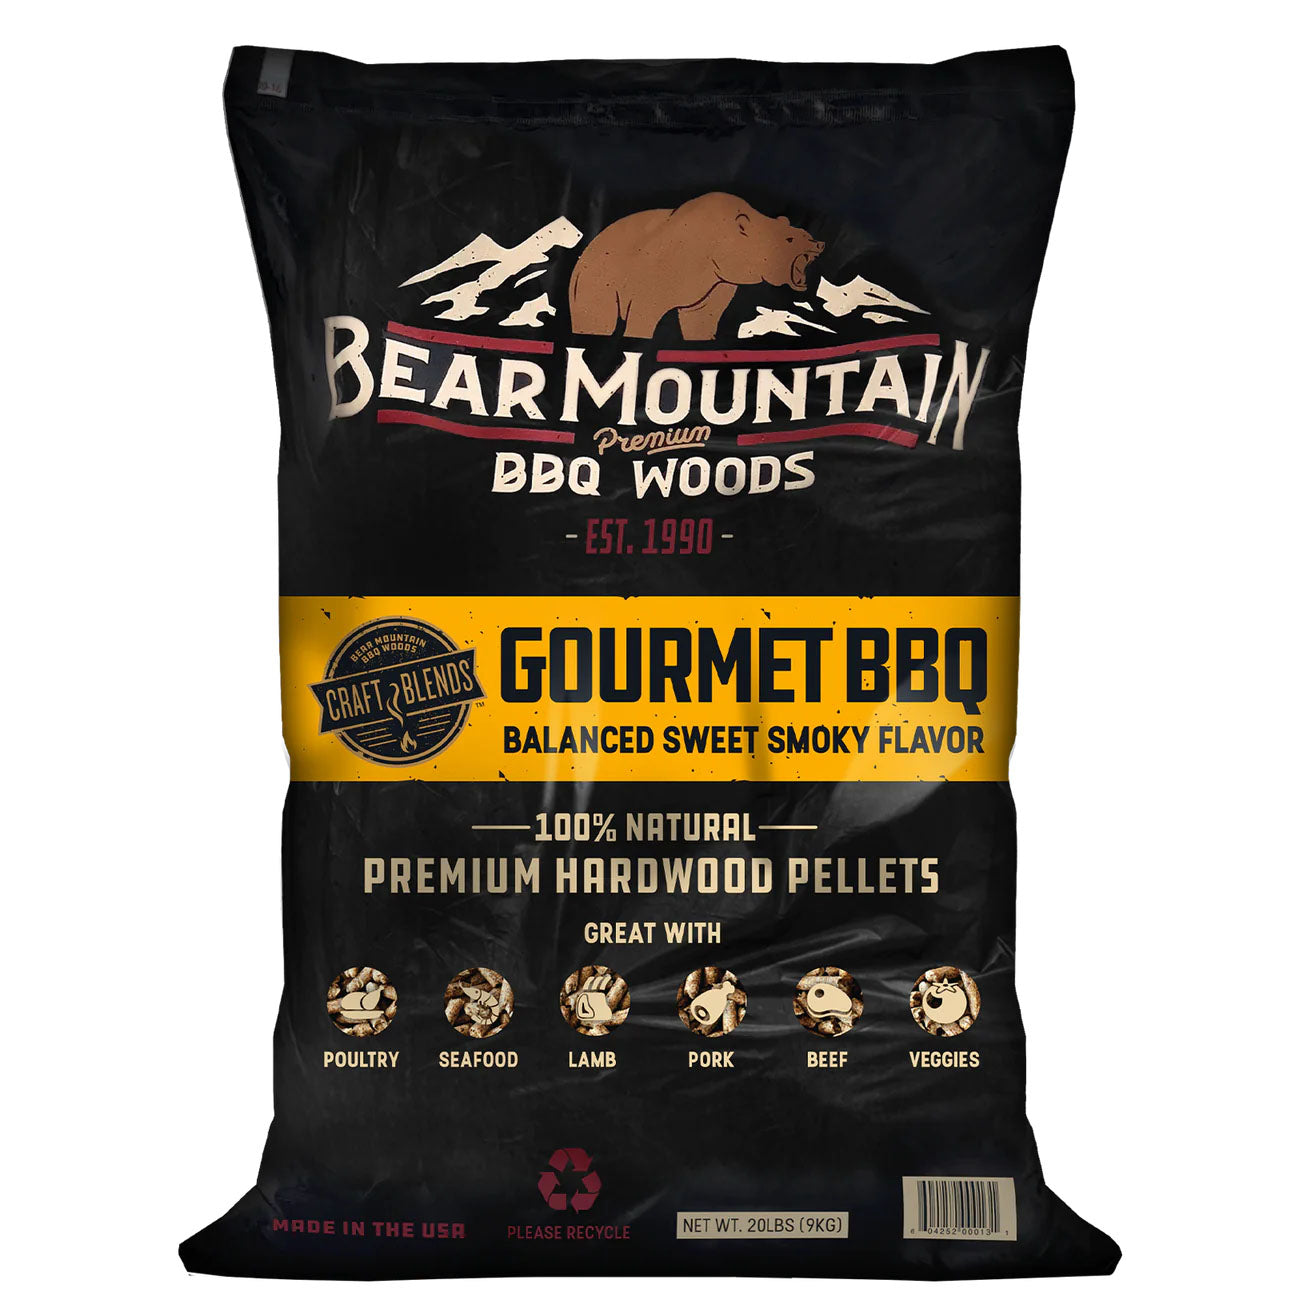 Bear Mountain BBQ Wood Pellets — Gourmet